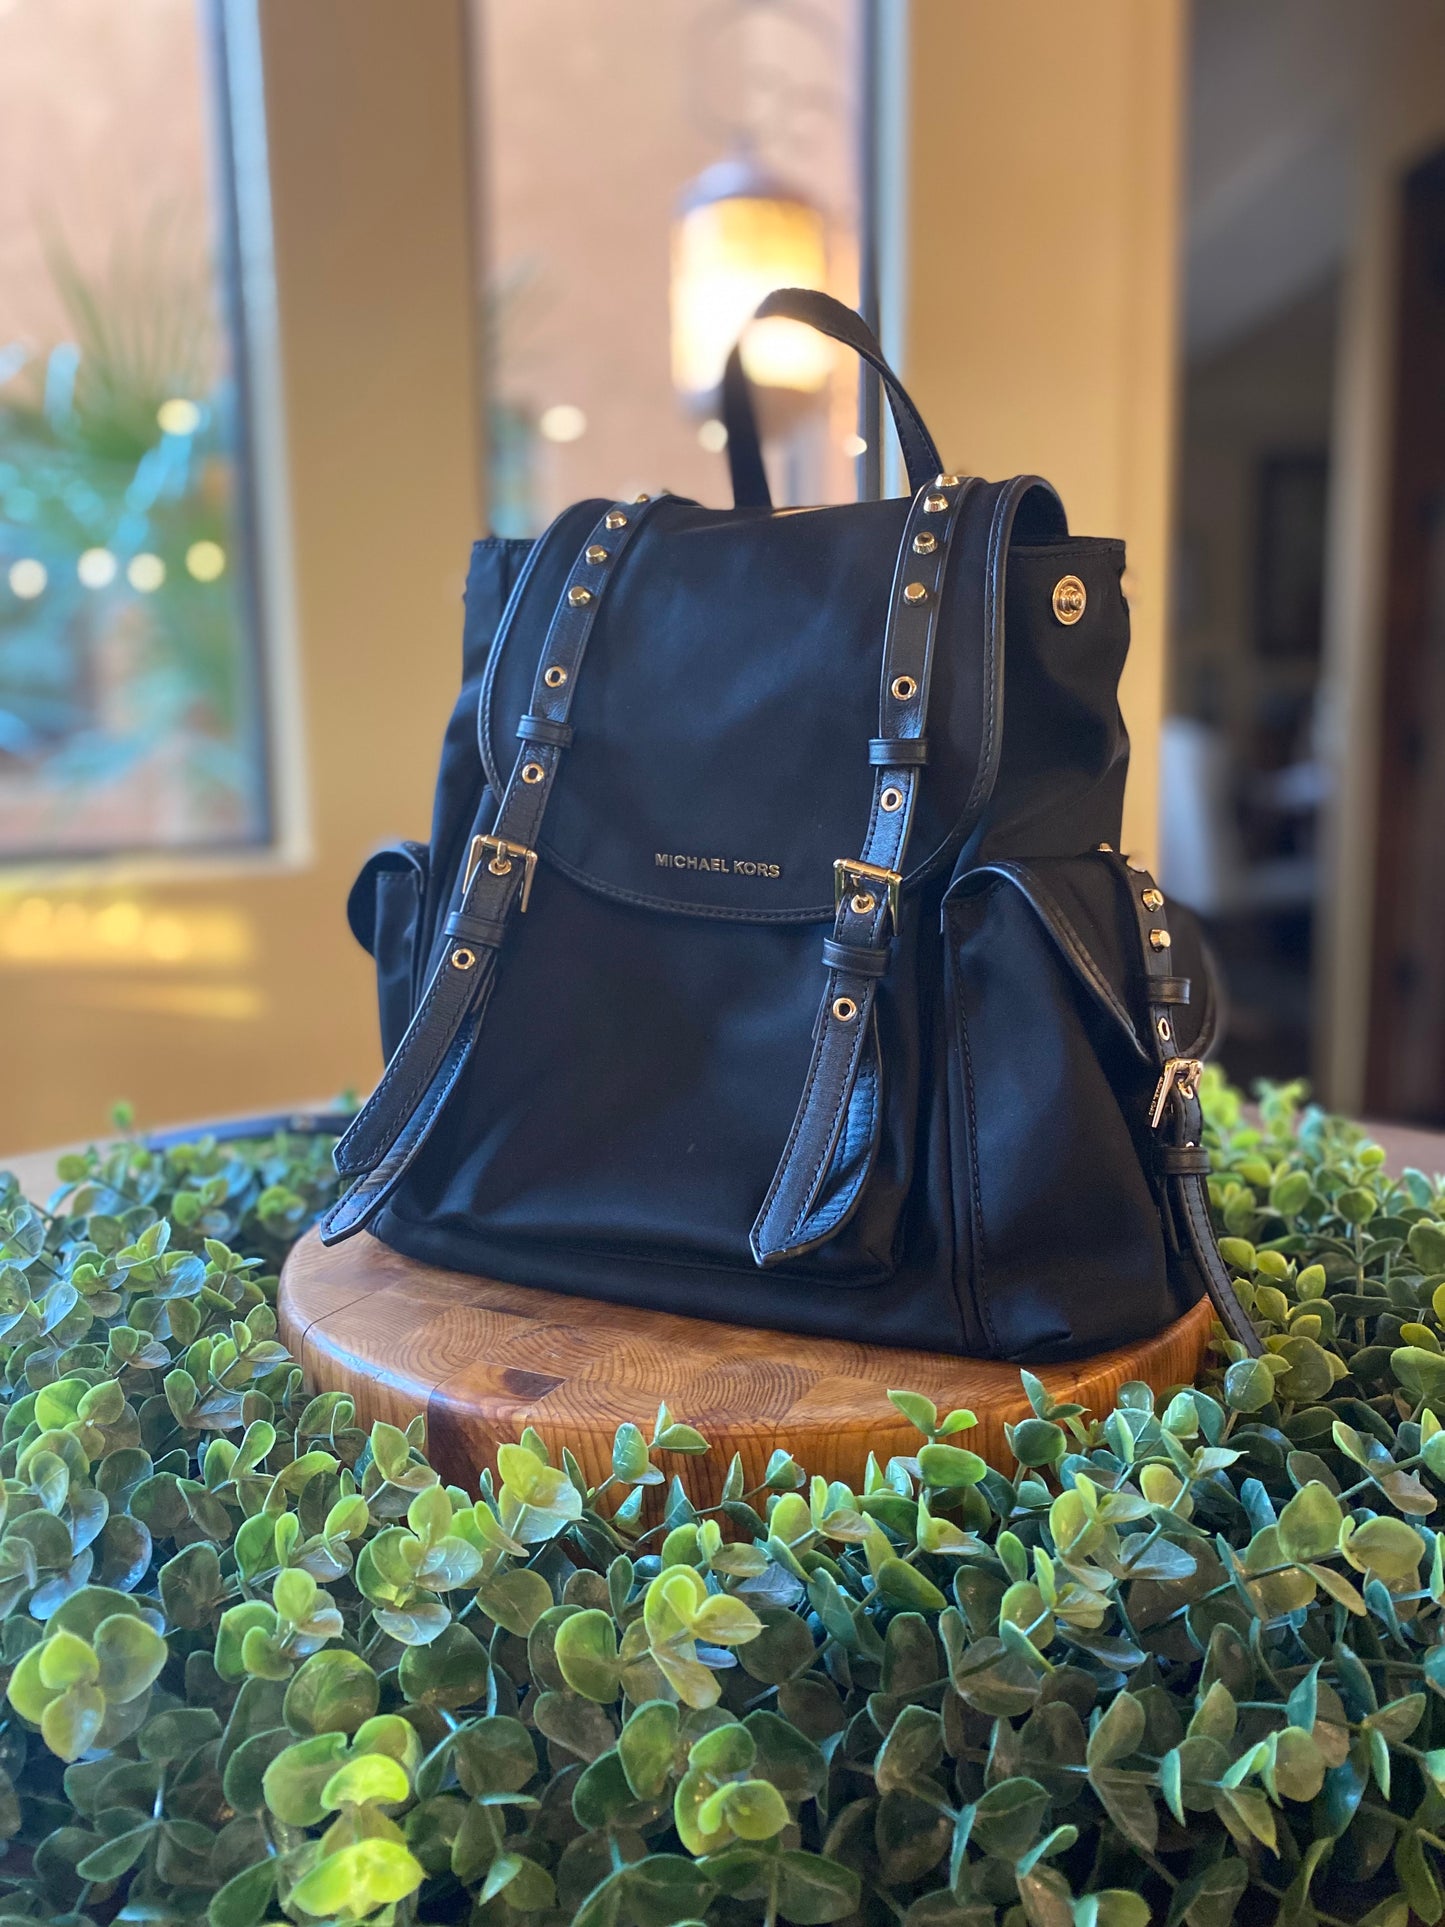 Michael Kors Leila Nylon Leather Studded Backpack